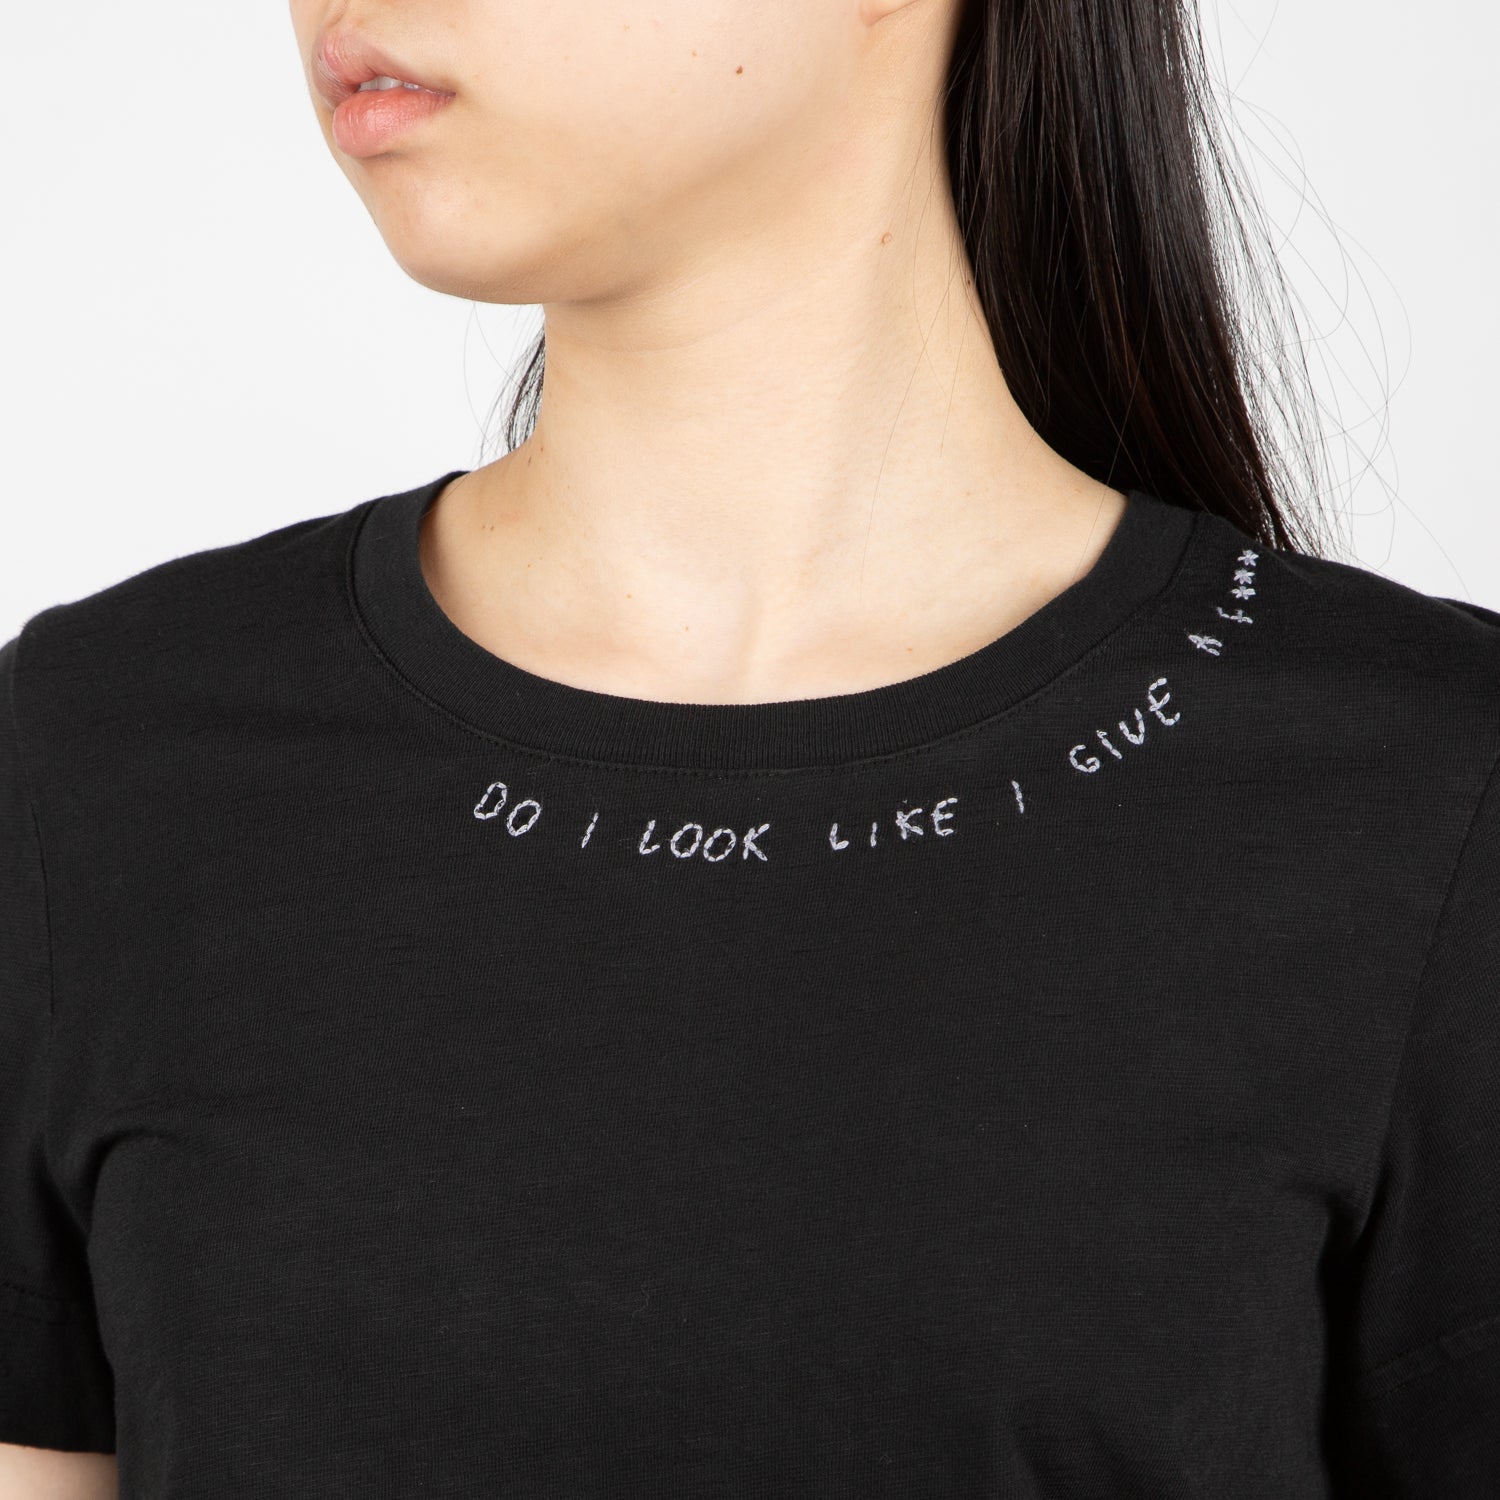 "Do I Look Like I Give a F***" T-shirt, black - Secret Location